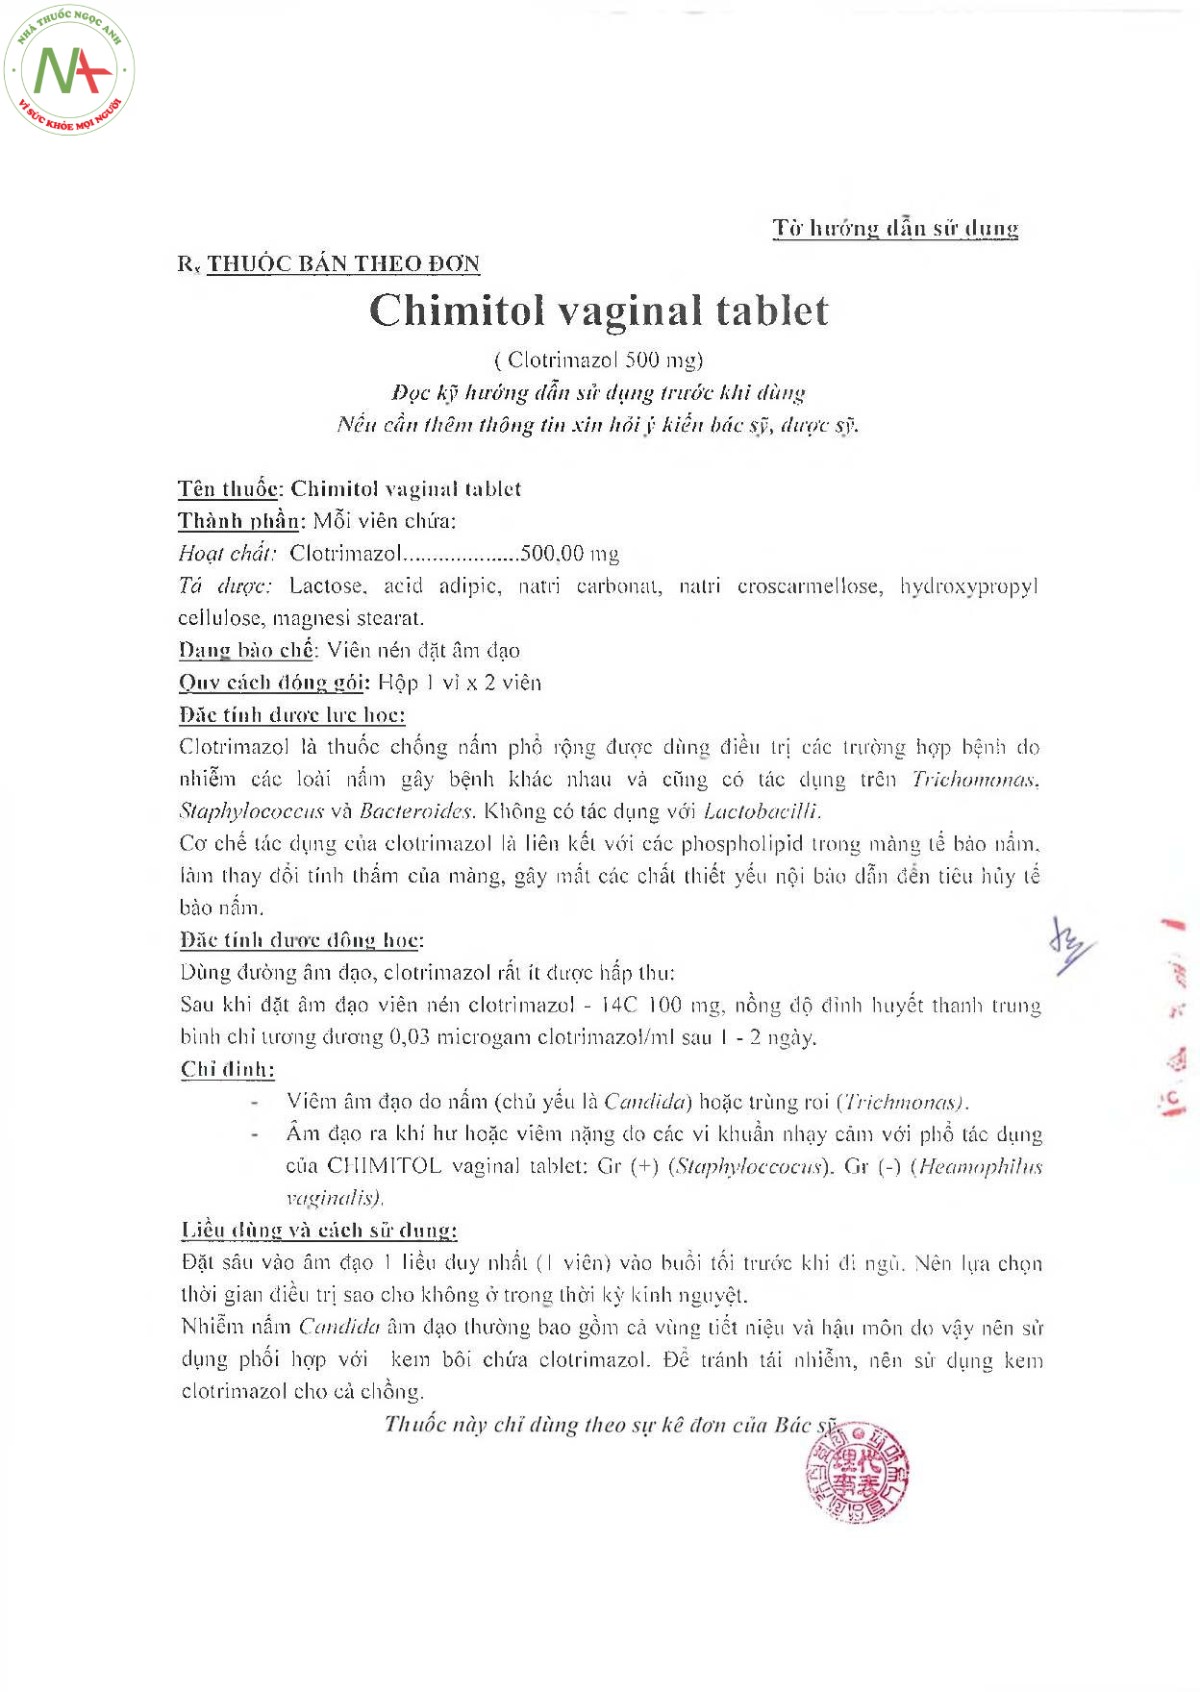 Hướng dẫn sử dụng thuốc đặt Chimitol Vaginal Tablet